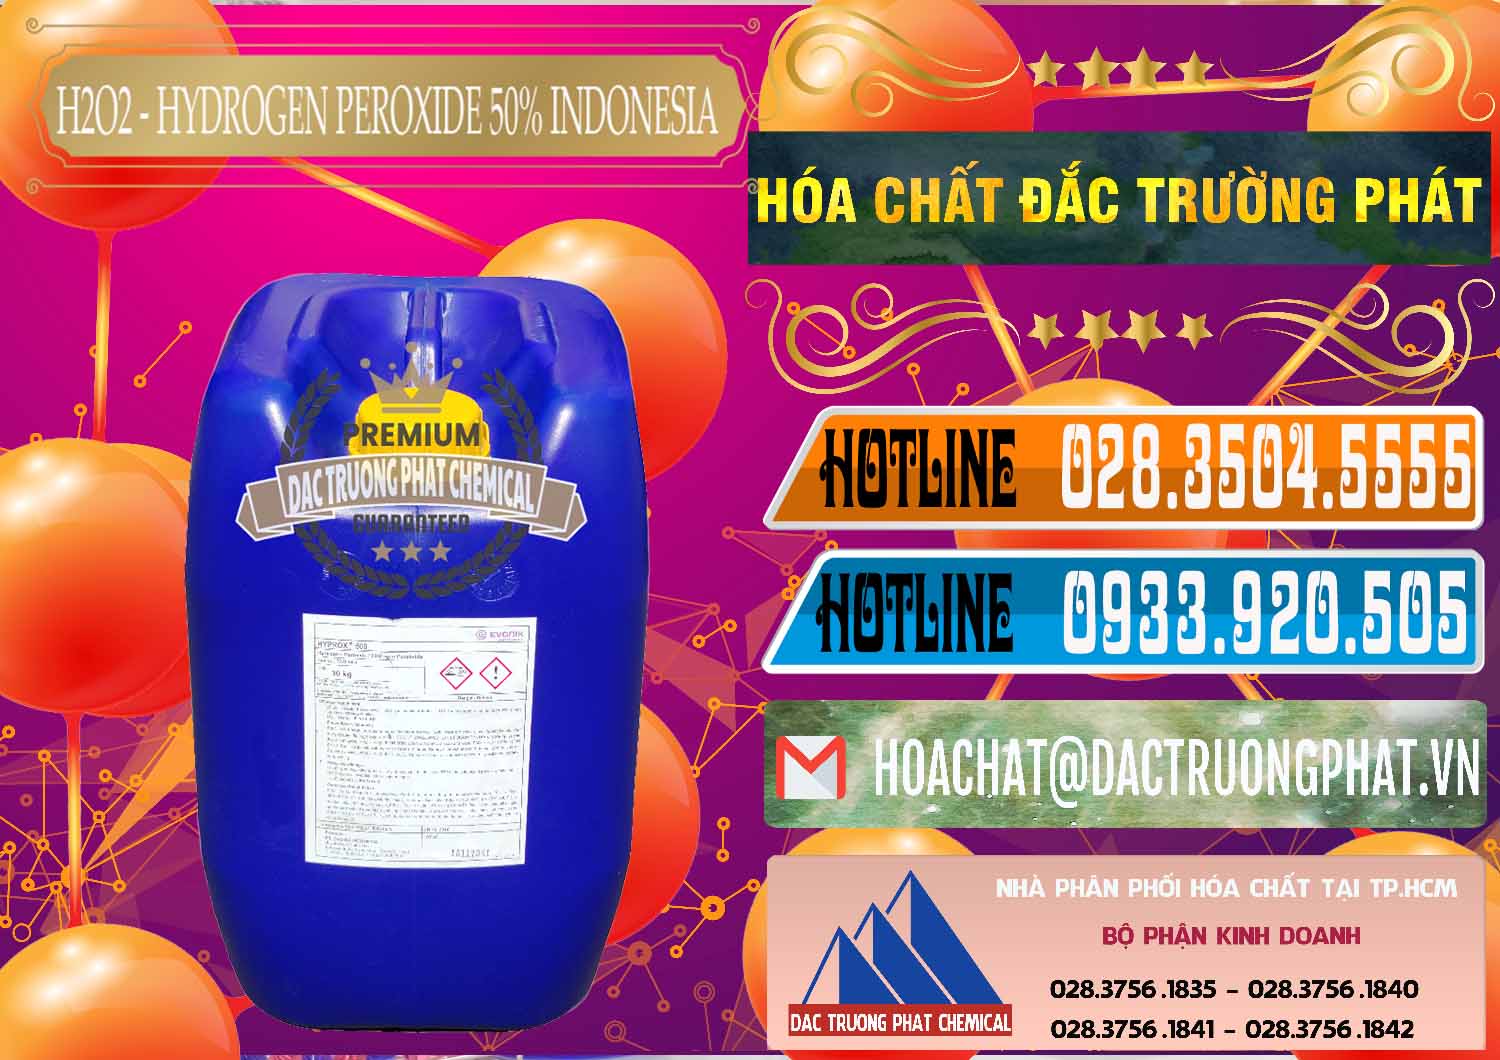 Cty chuyên kinh doanh - bán H2O2 - Hydrogen Peroxide 50% Evonik Indonesia - 0070 - Công ty chuyên cung cấp ( bán ) hóa chất tại TP.HCM - stmp.net